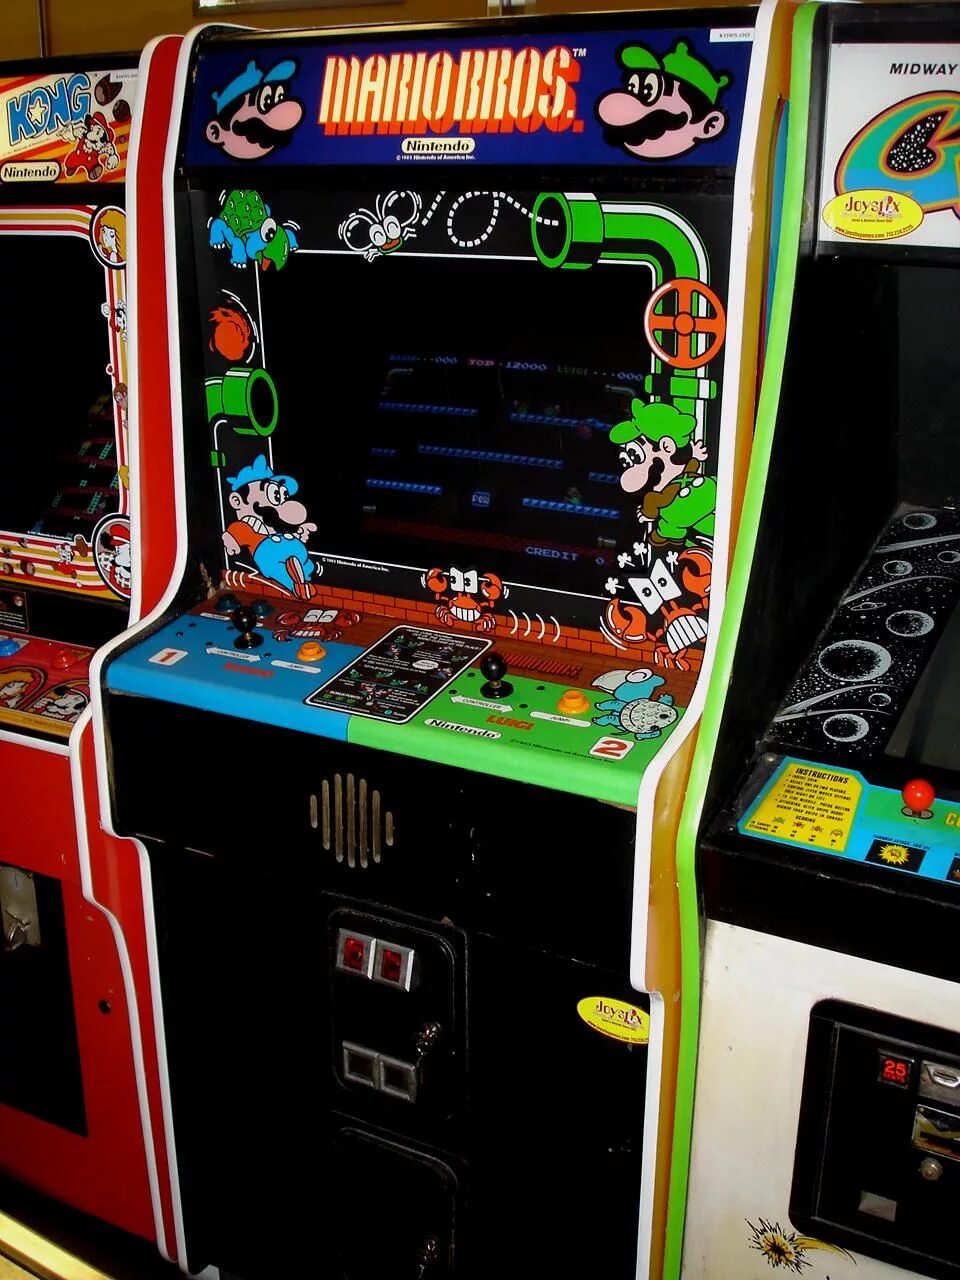 Описание игровых автоматов. Super Mario Bros. Аркадный автомат. Mario Bros 1983 Arcade. Игровой аппарат Марио. Игровые автомат супер Марио БРОС.